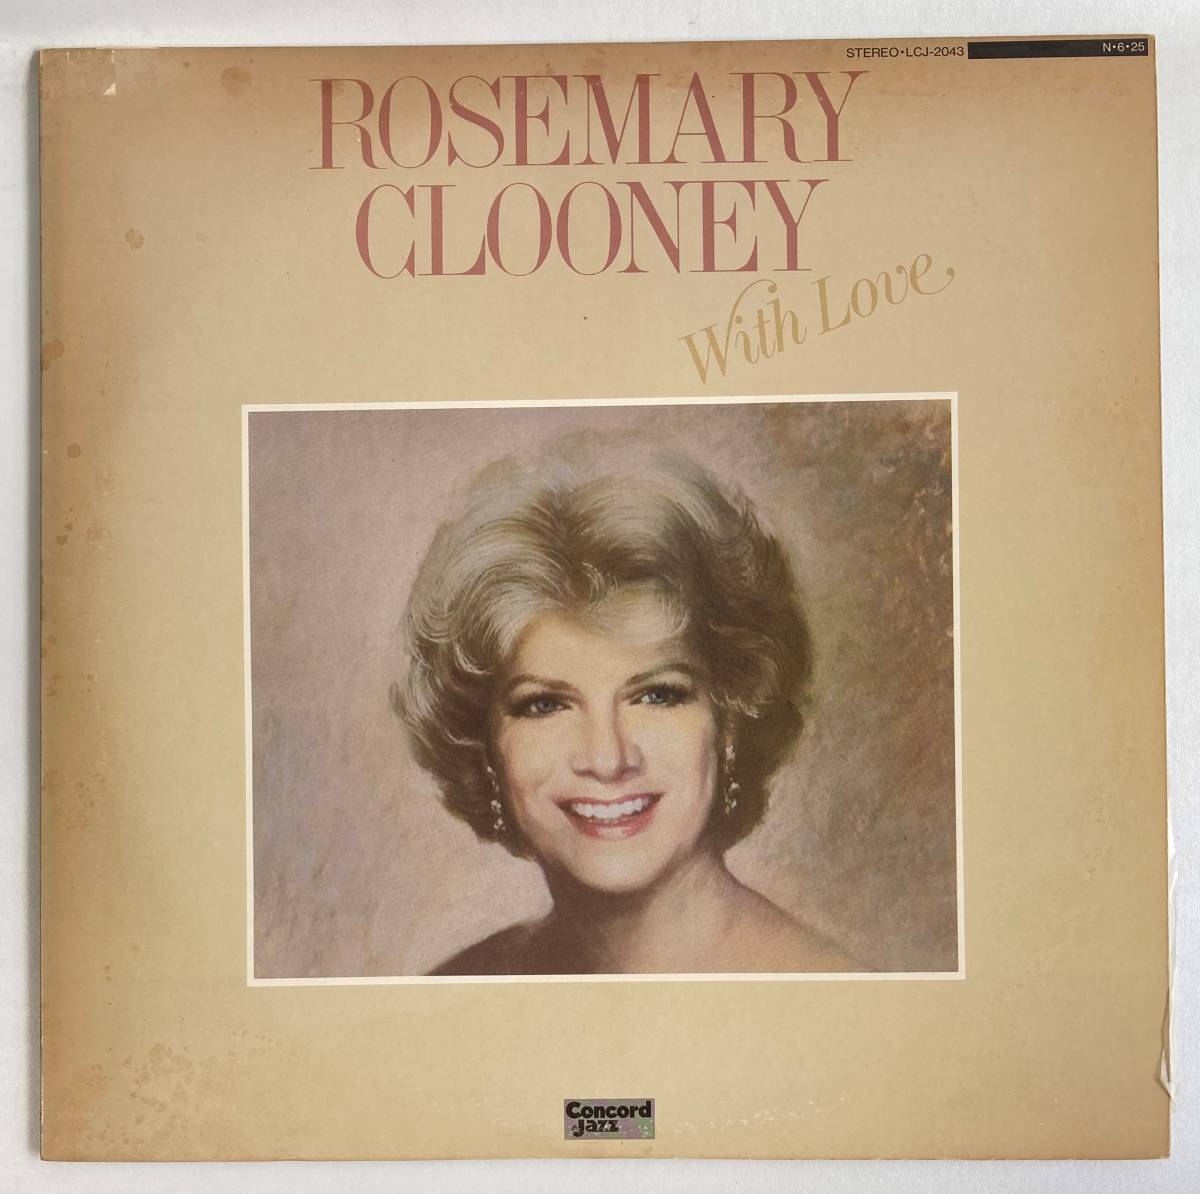 ローズマリー・クルーニー (Rosemary Clooney) / With Love 国内盤LP YU LCJ2043 STEREO 帯無し_画像1